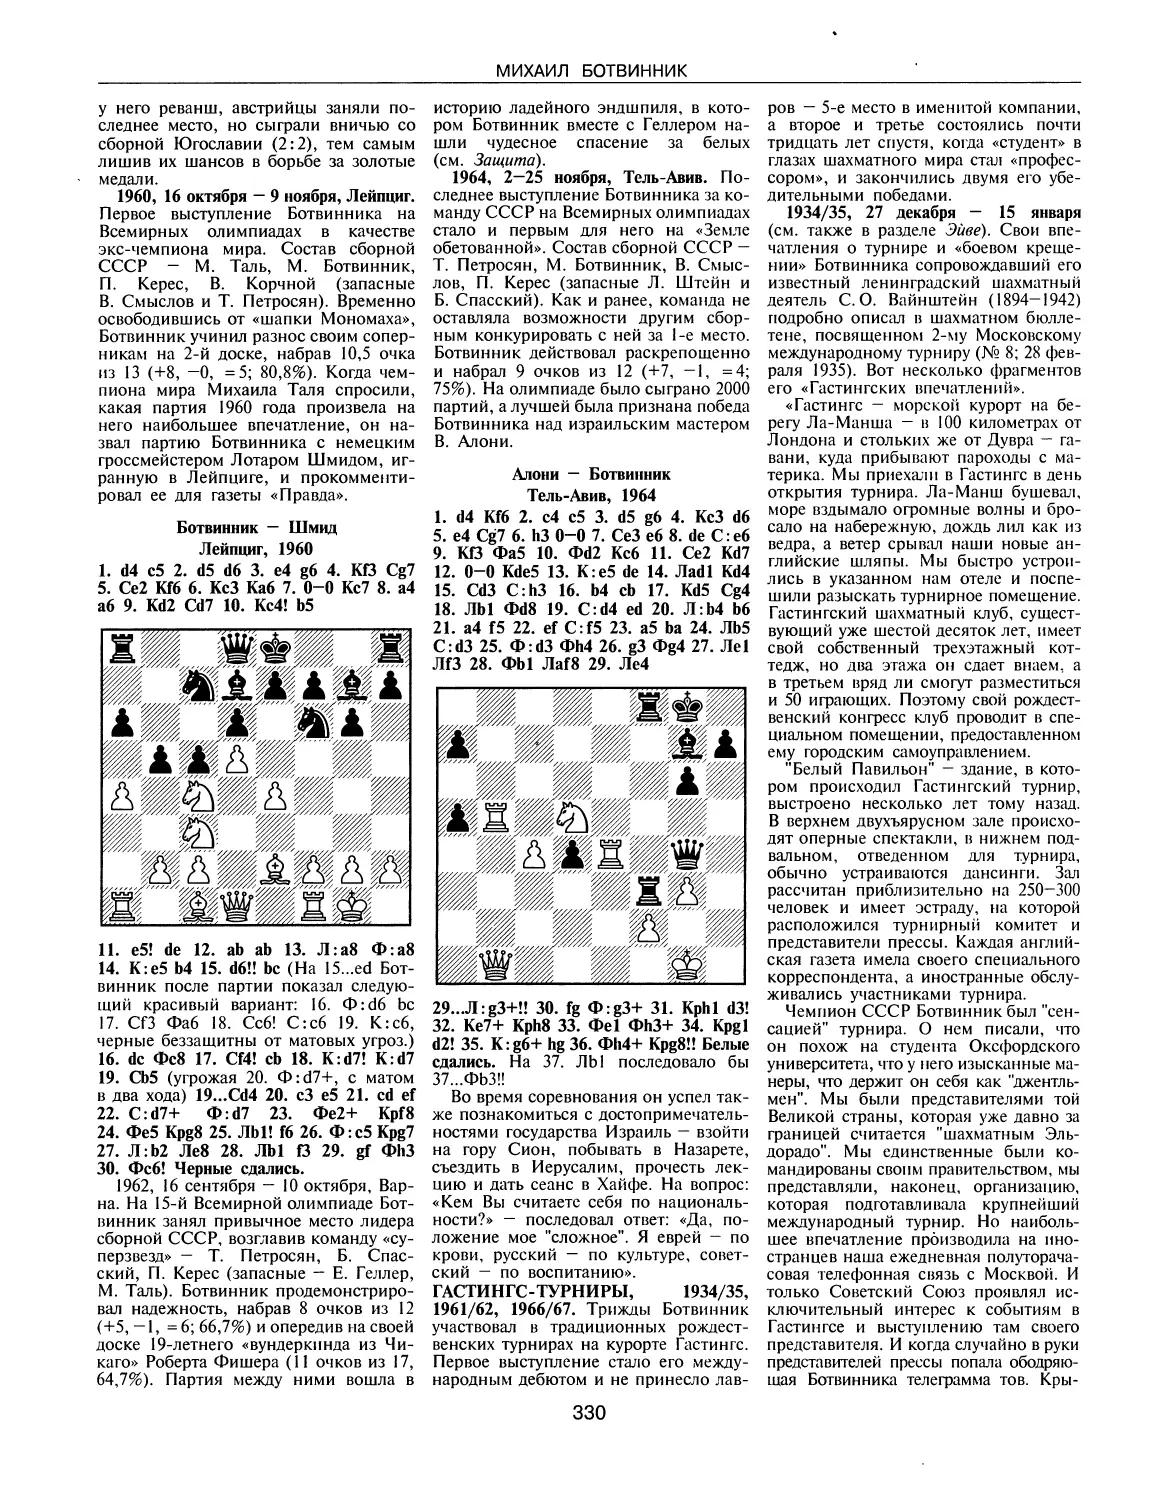 Гастингс - турниры, 1934/35, 1961/62, 1966/67